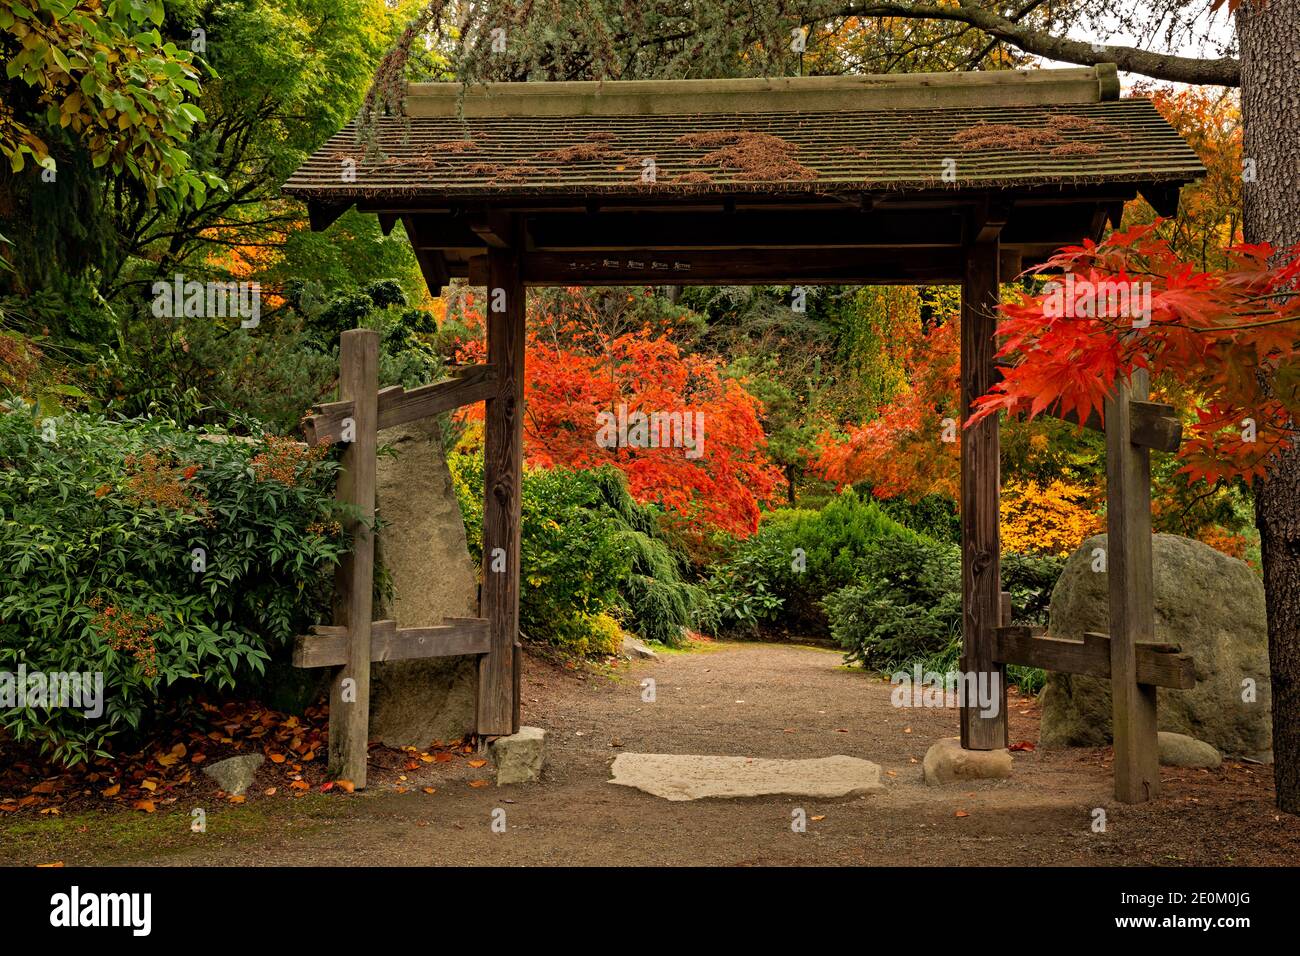 WA18966-00...WASHINGTON - Inside the entrance to the Stone Garden at Kabota Gardens Park in Seattle. Stock Photo